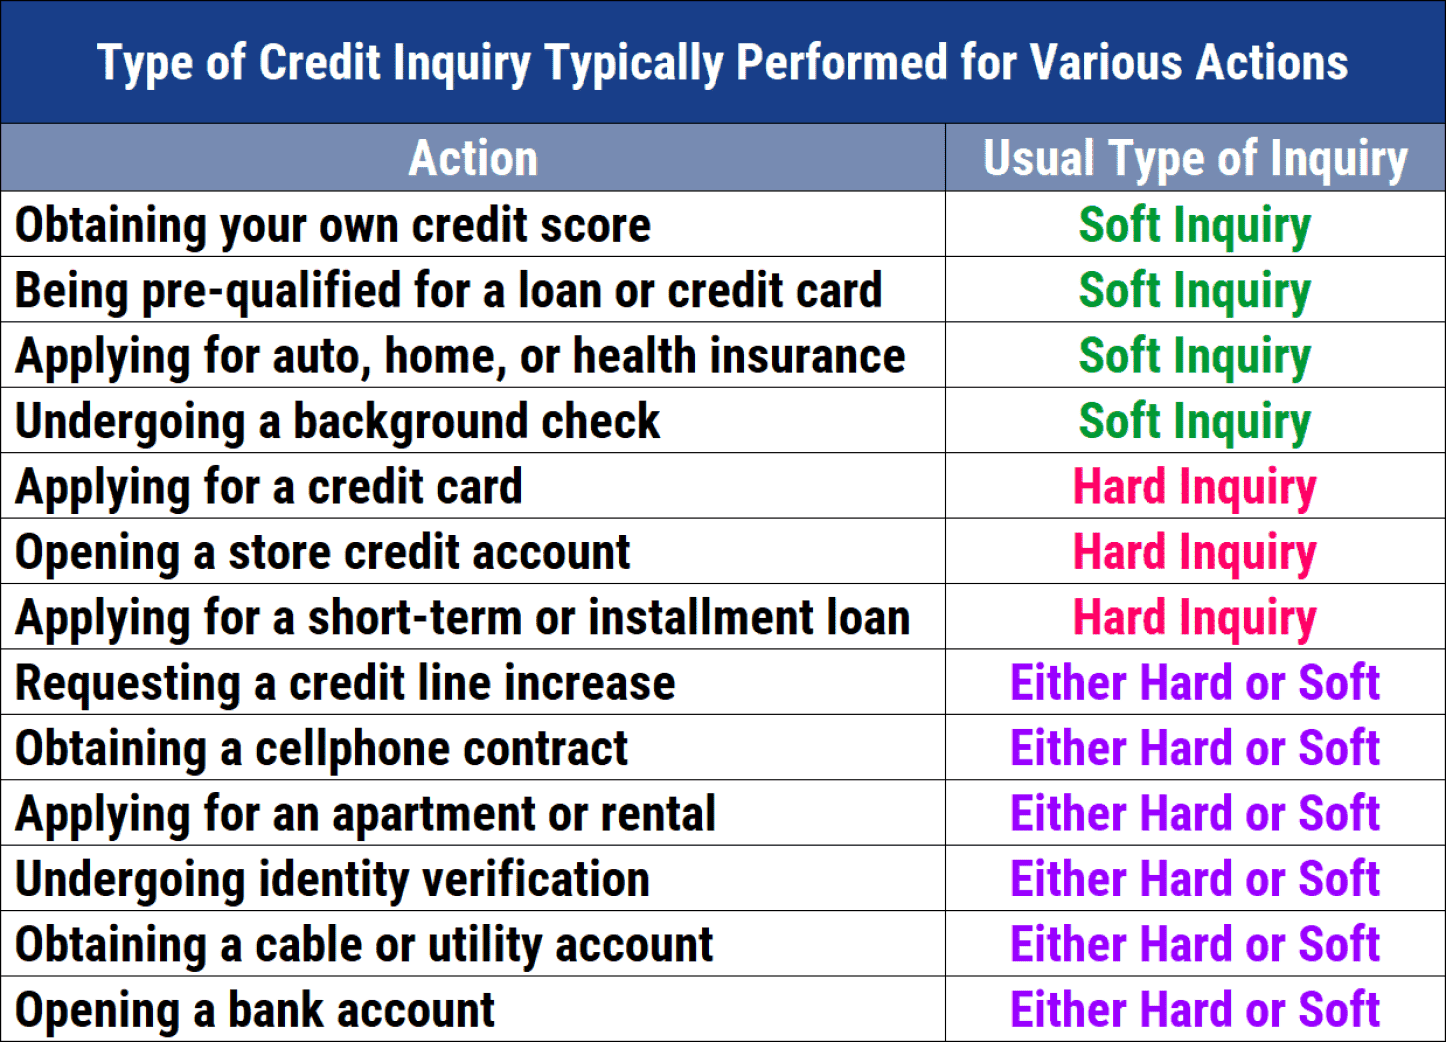 Types of credit inquiries